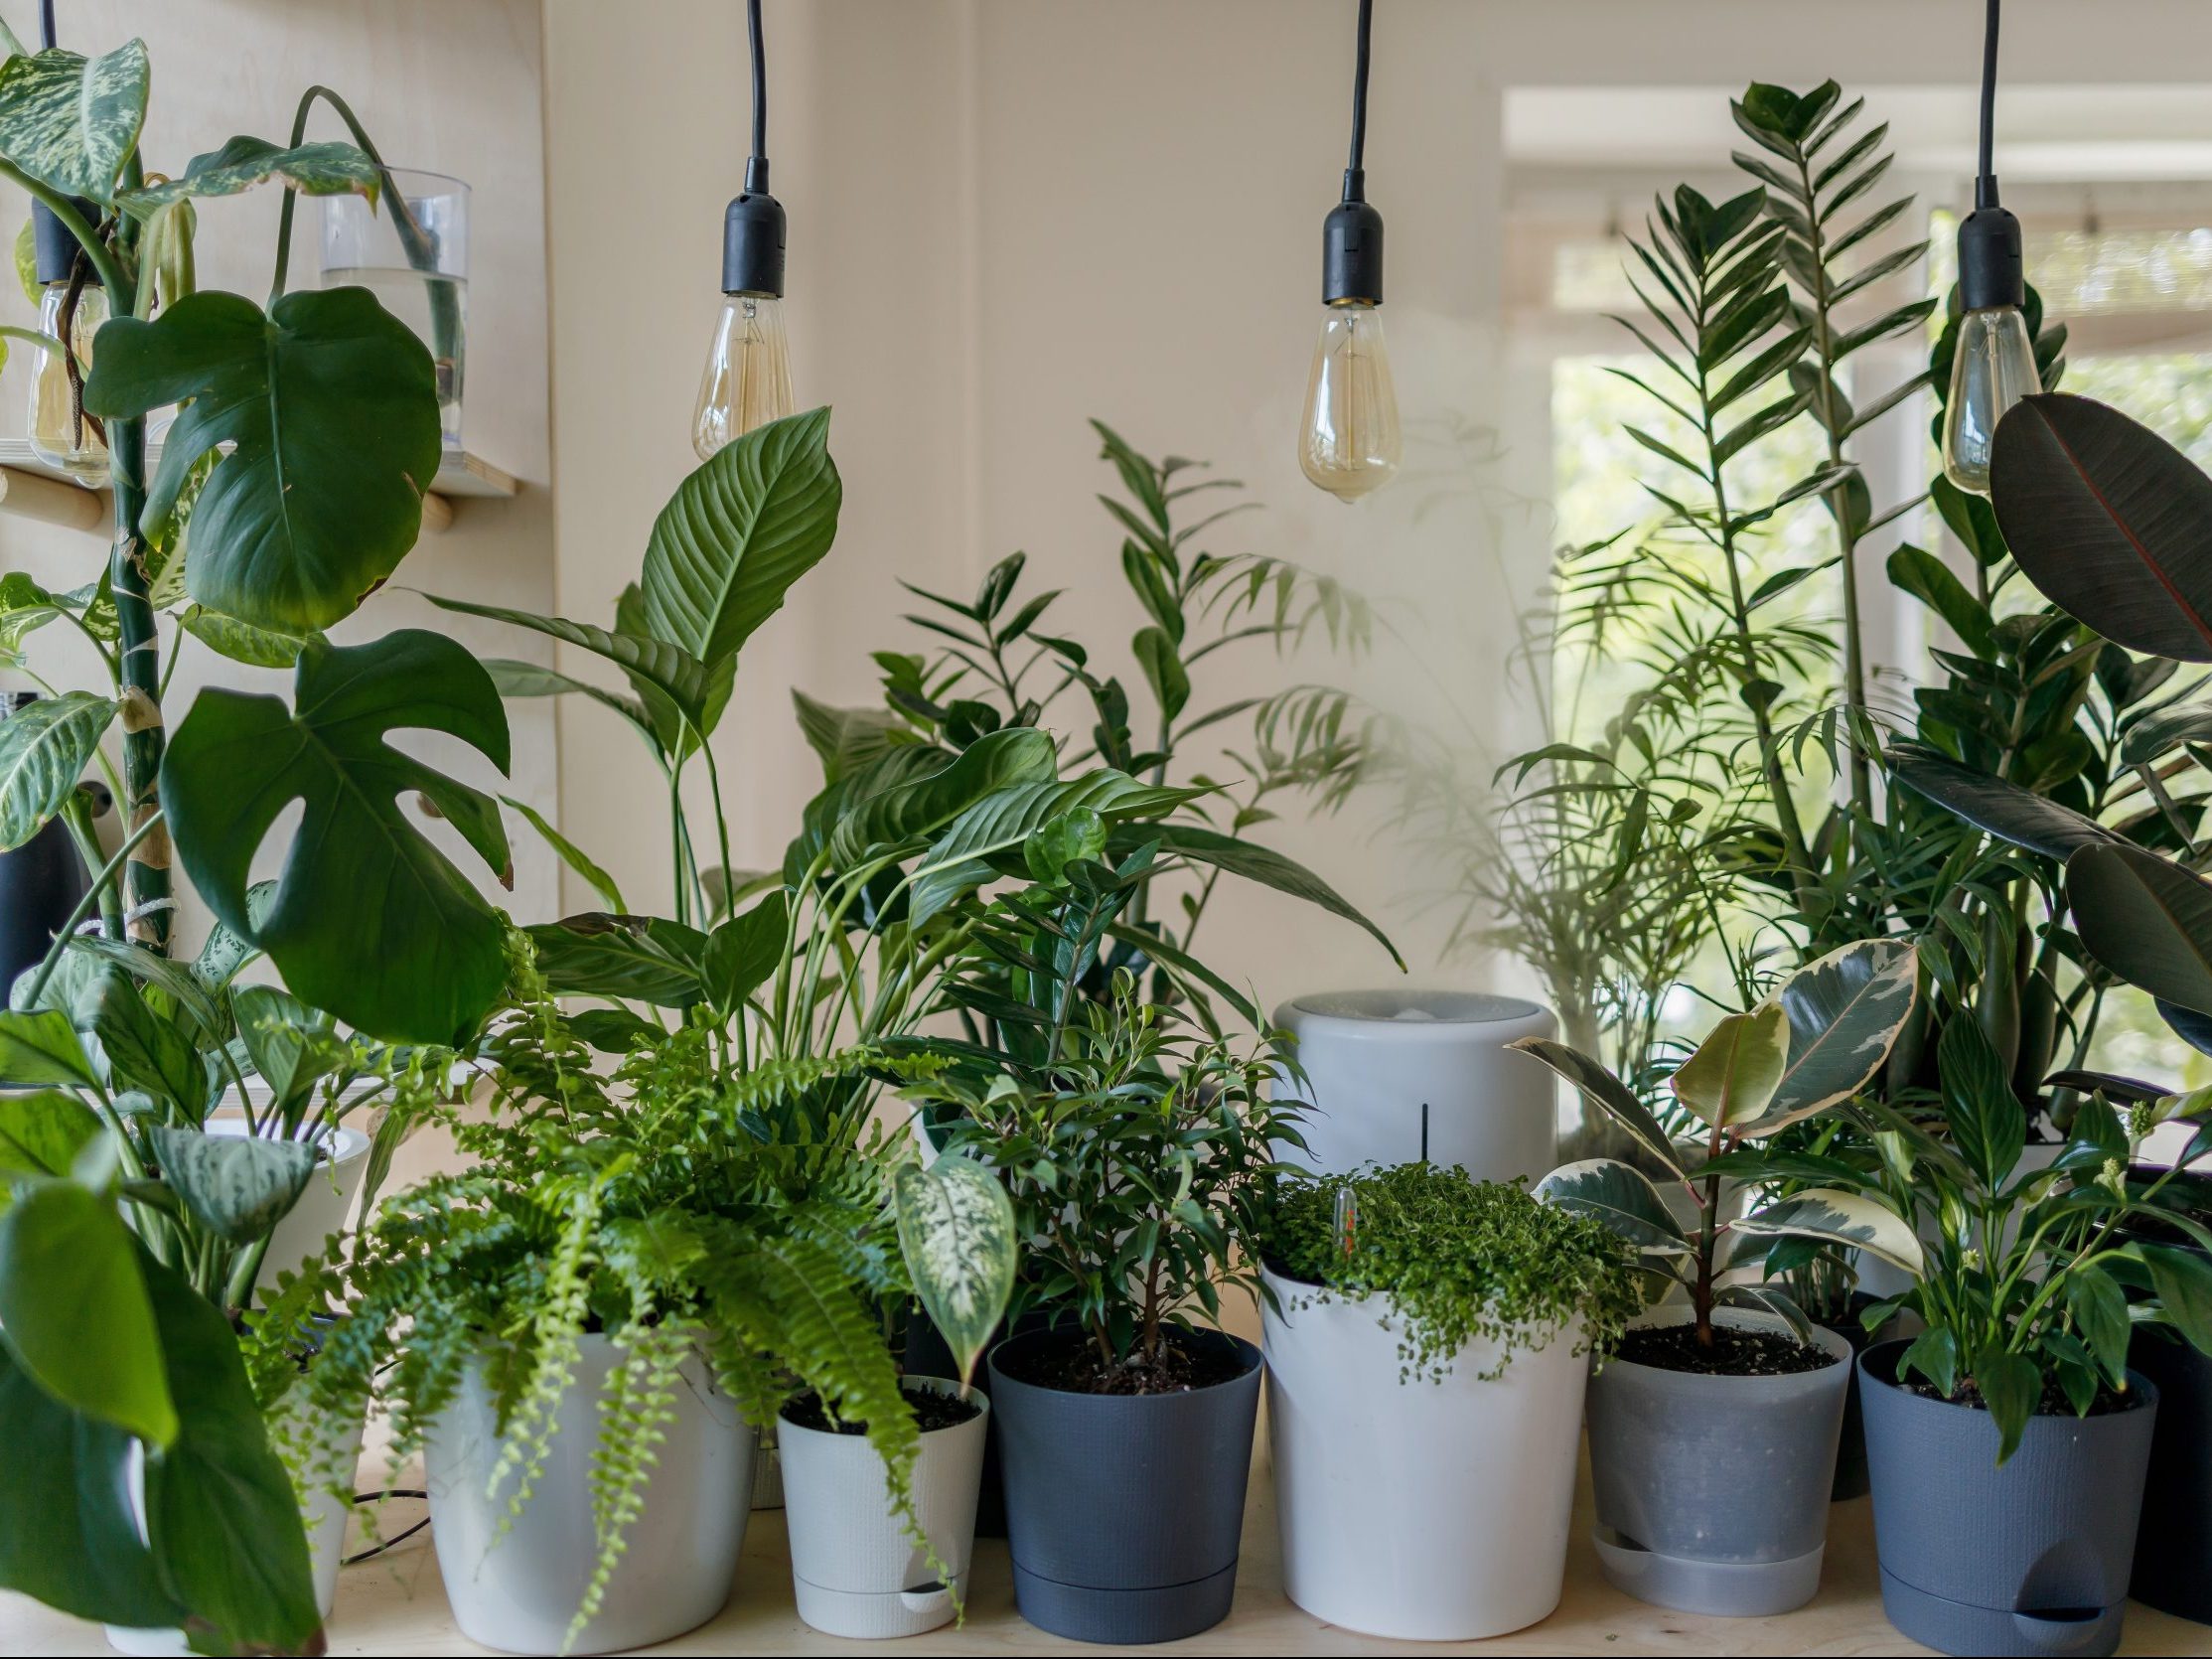 Πώς να προστατεύσεις τα φυτά σου από την ζέστη και κάθε πότε πρέπει να τα ποτίζεις